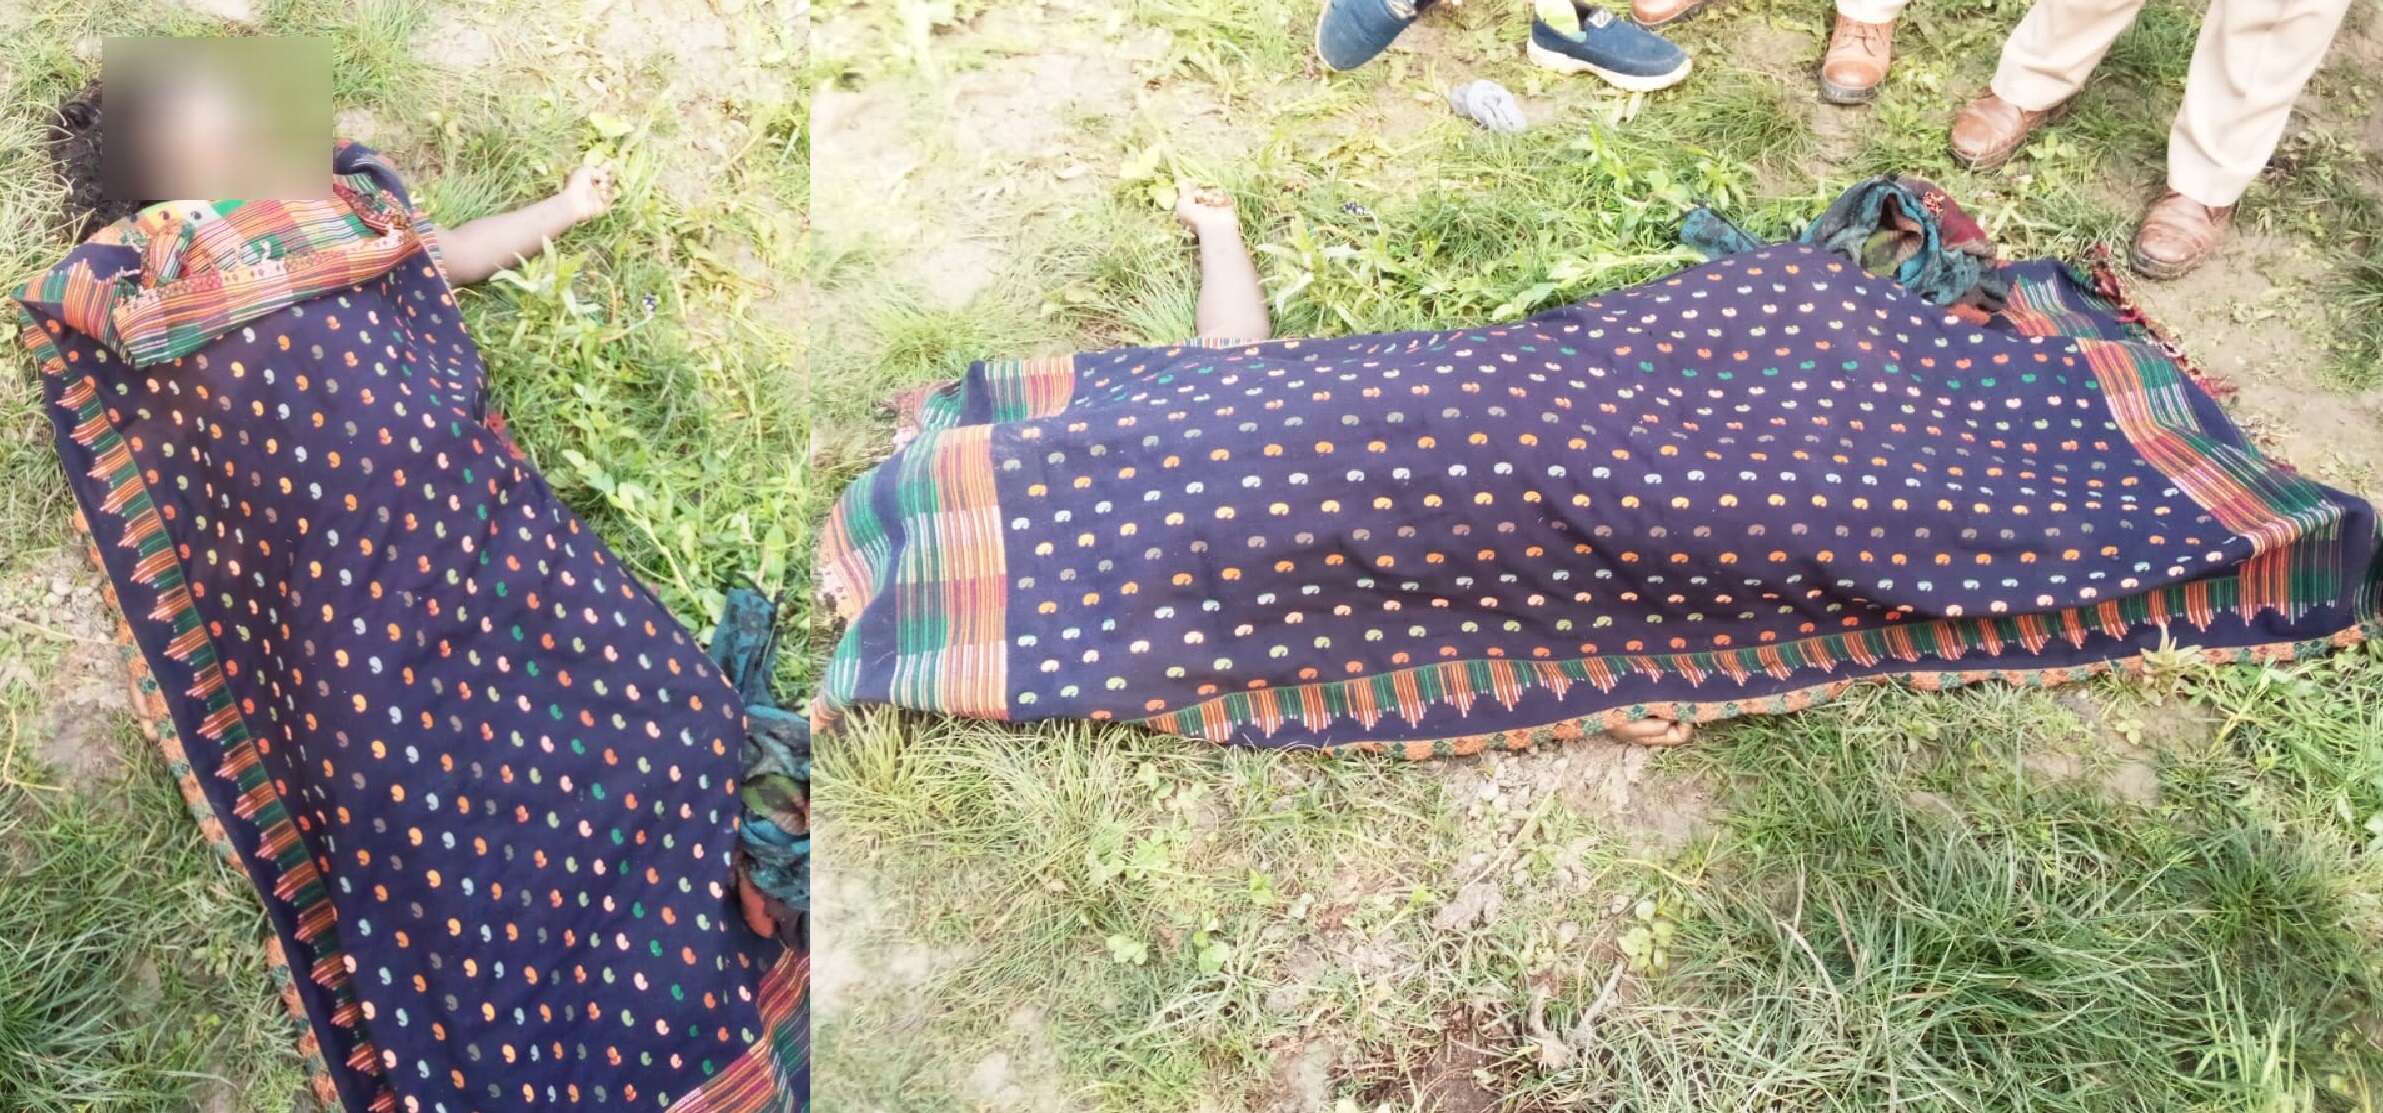 CM योगी के गृह जनपद गोरखपुर में दलित महिला की गला दबाकर हत्या, पति ने जताई बलात्कार की आशंका